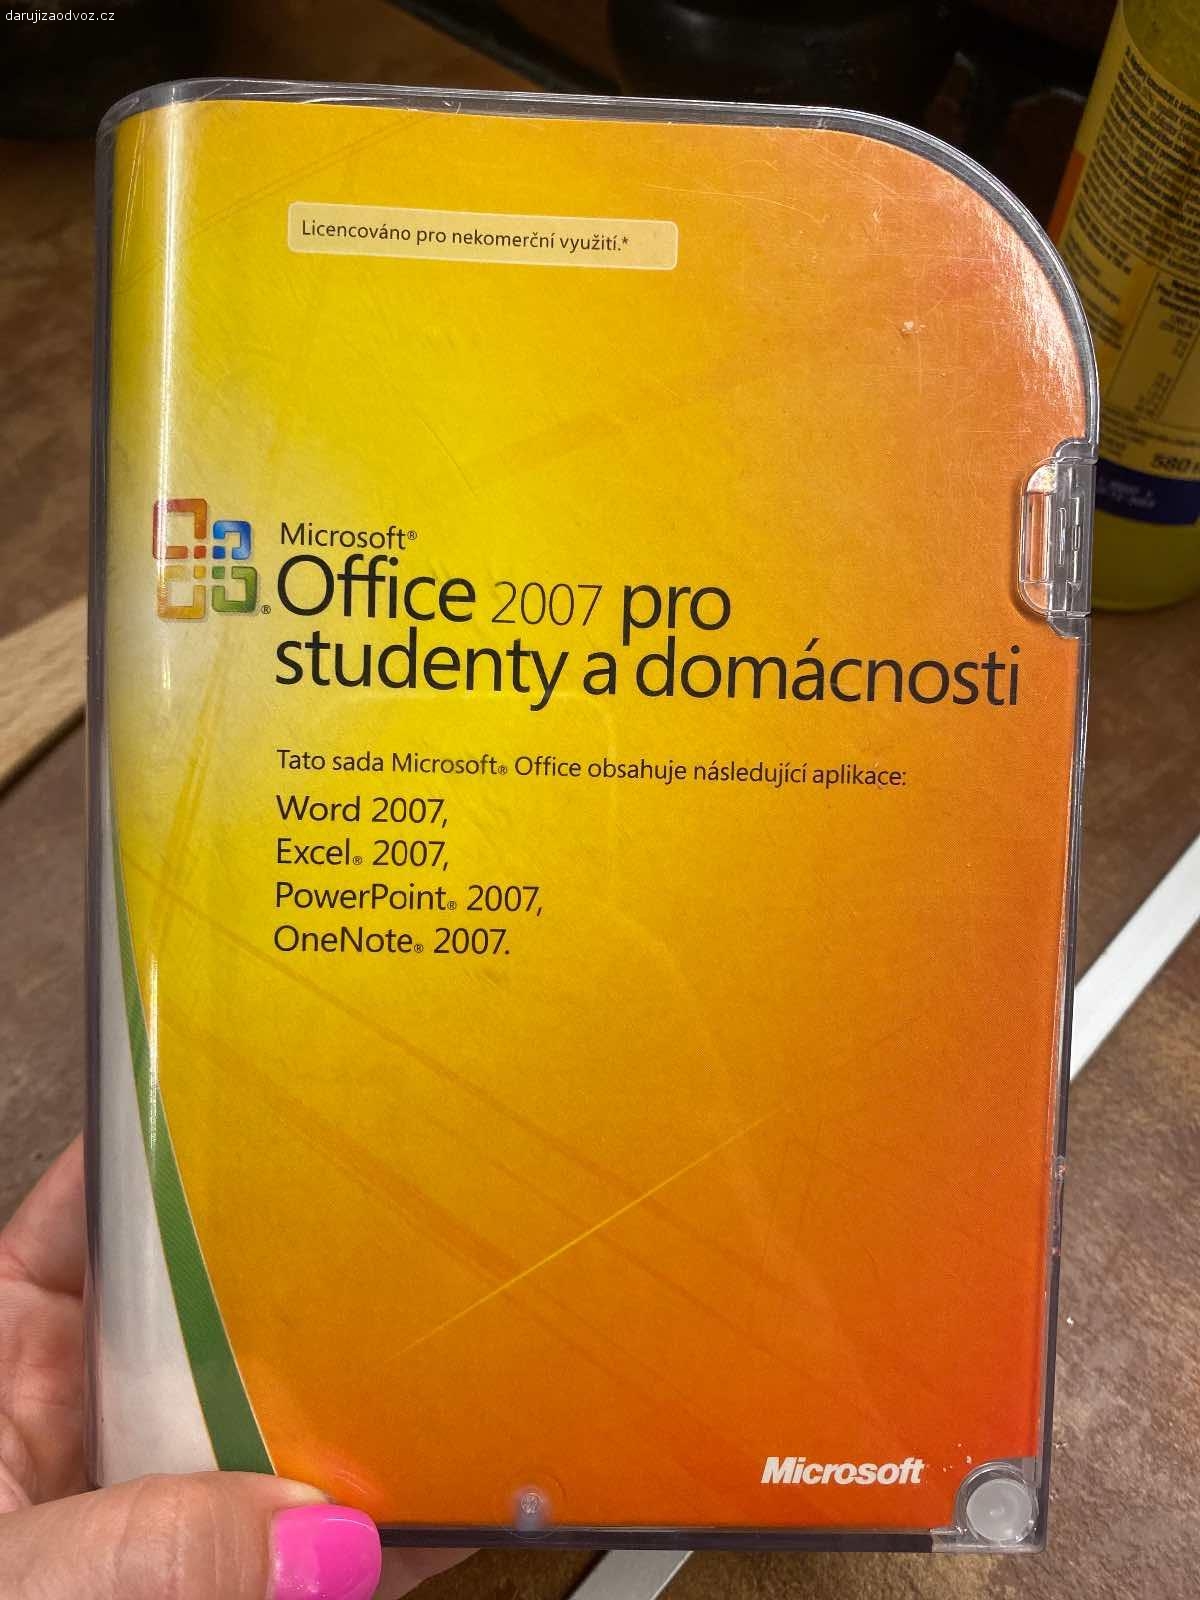 Microsoft Office 2007. Pro domácnosti nebo studenty. Balení obsahuje originální cd a produktový kód.

Daruji za odvoz, případně nás potěší ovoce, ale není to podmínkou:-).